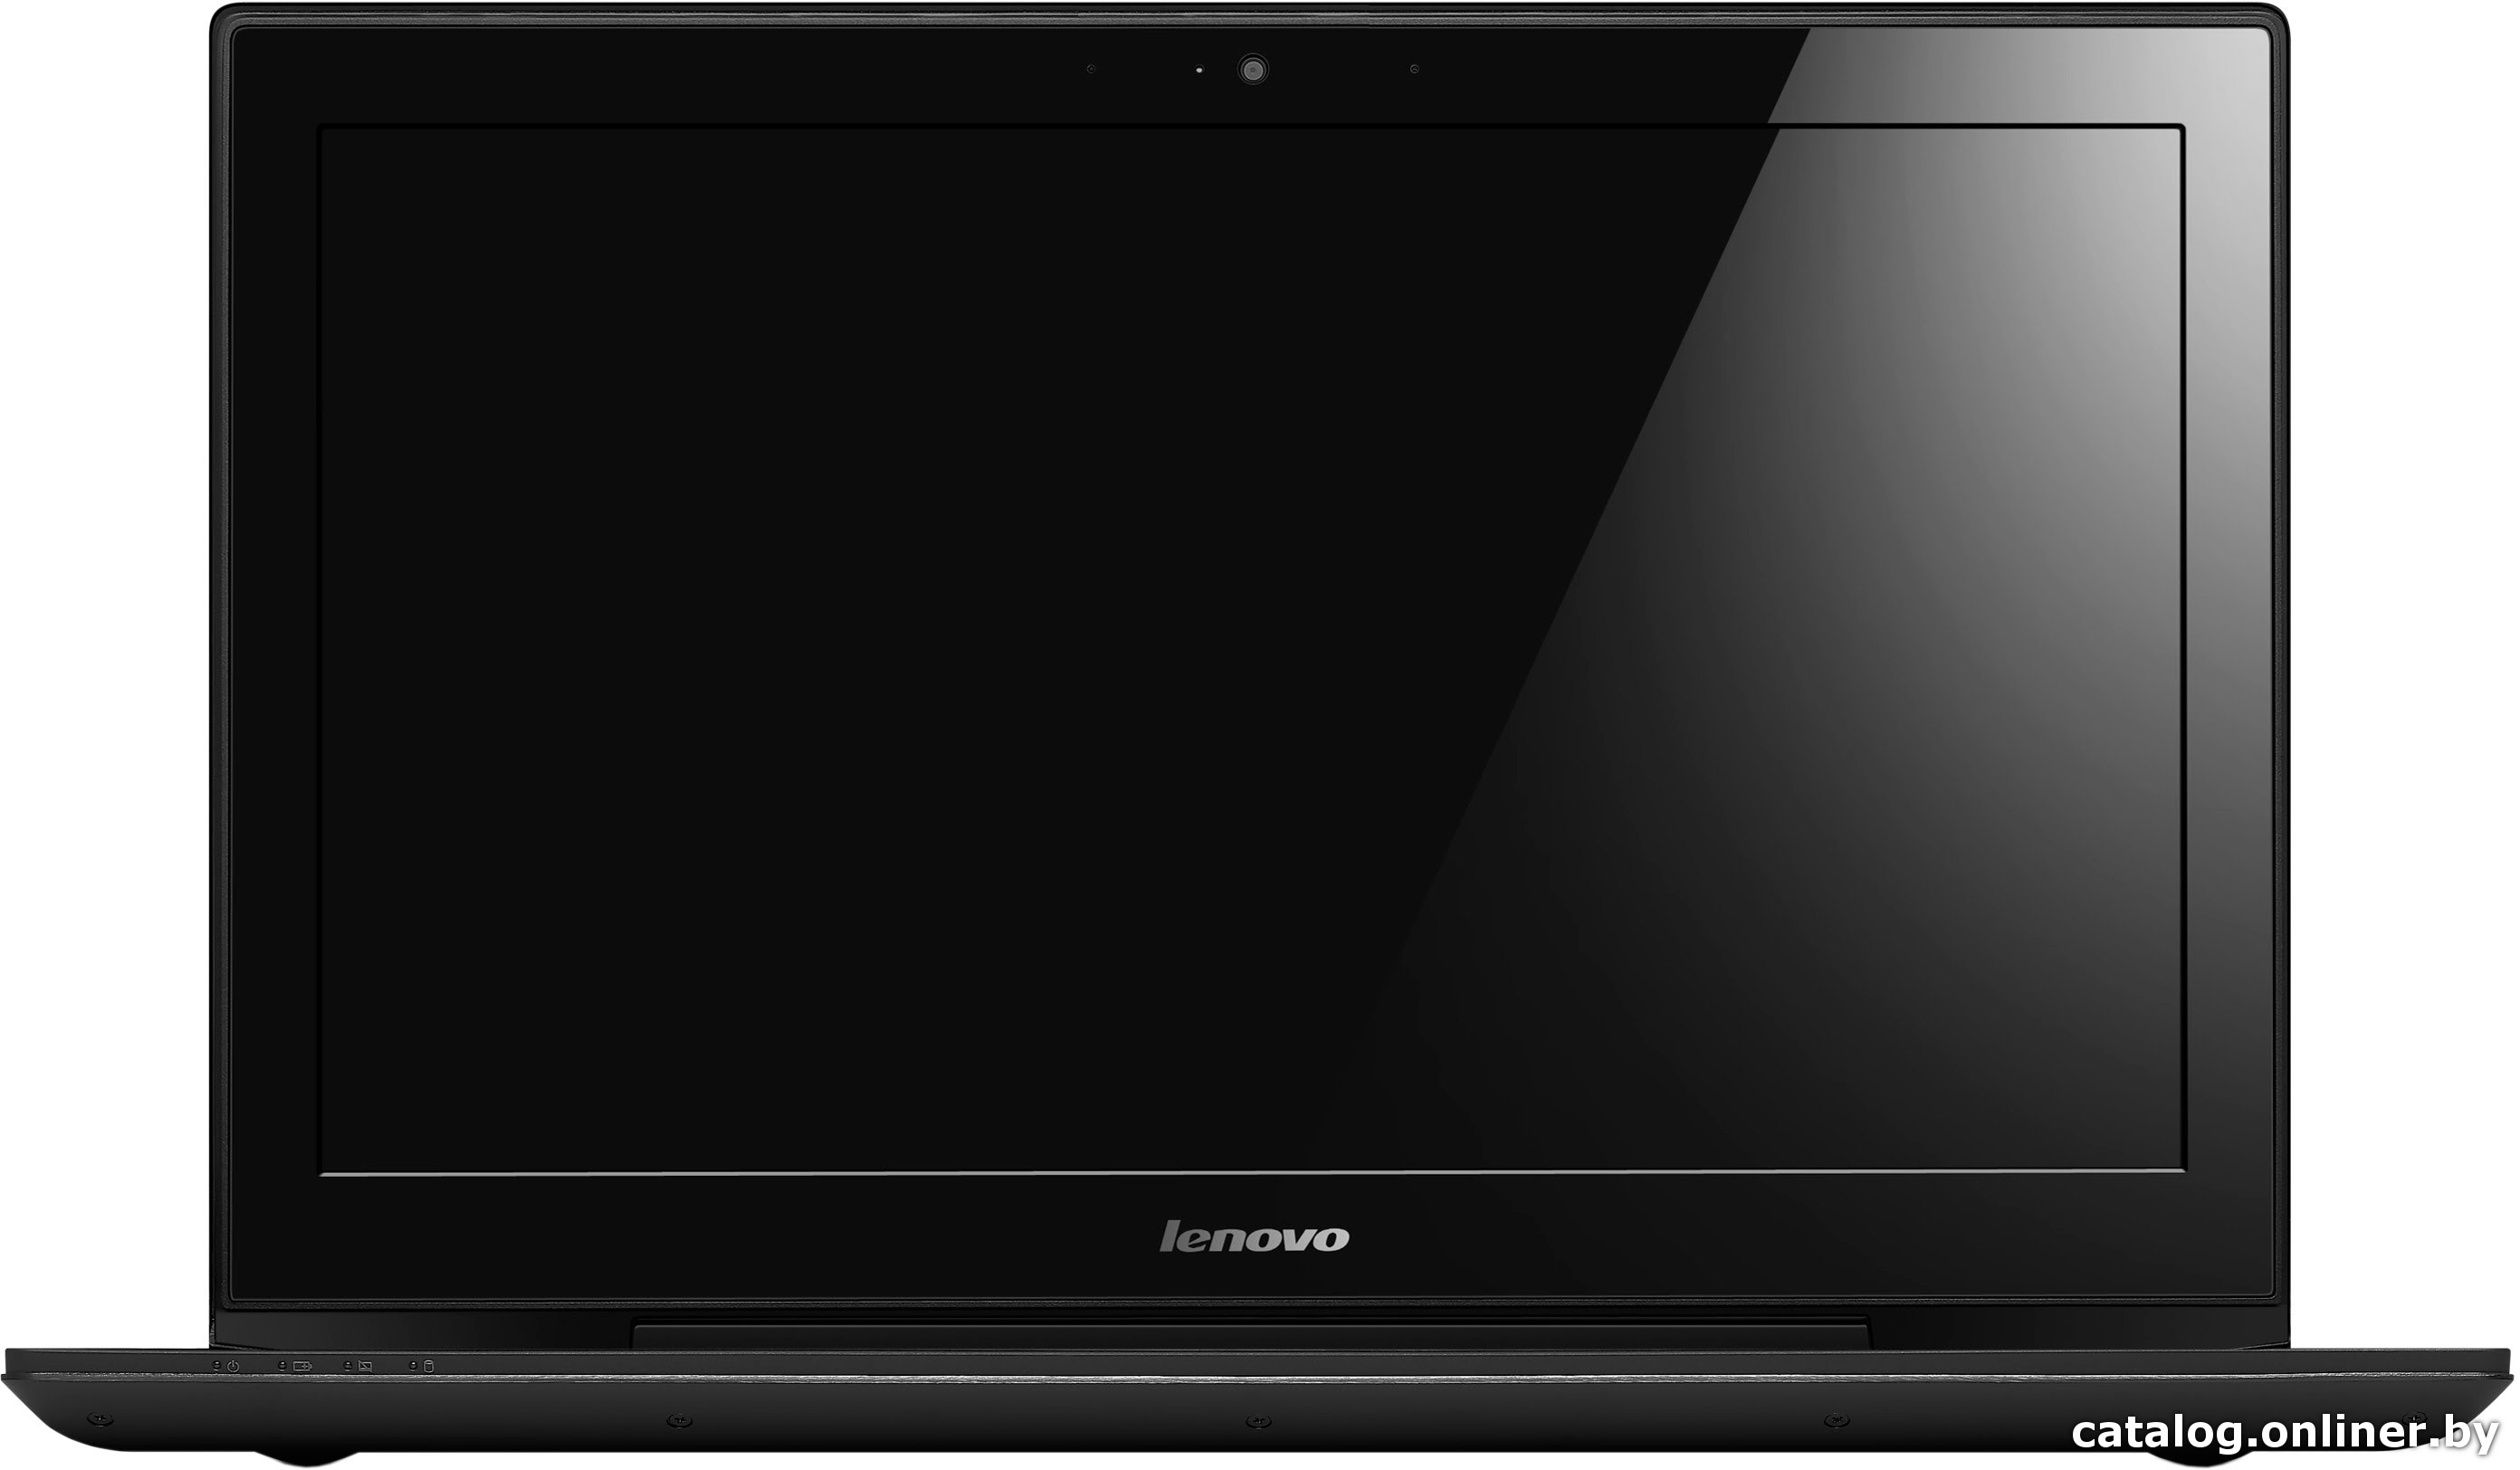 Замена экрана Lenovo Y50-70